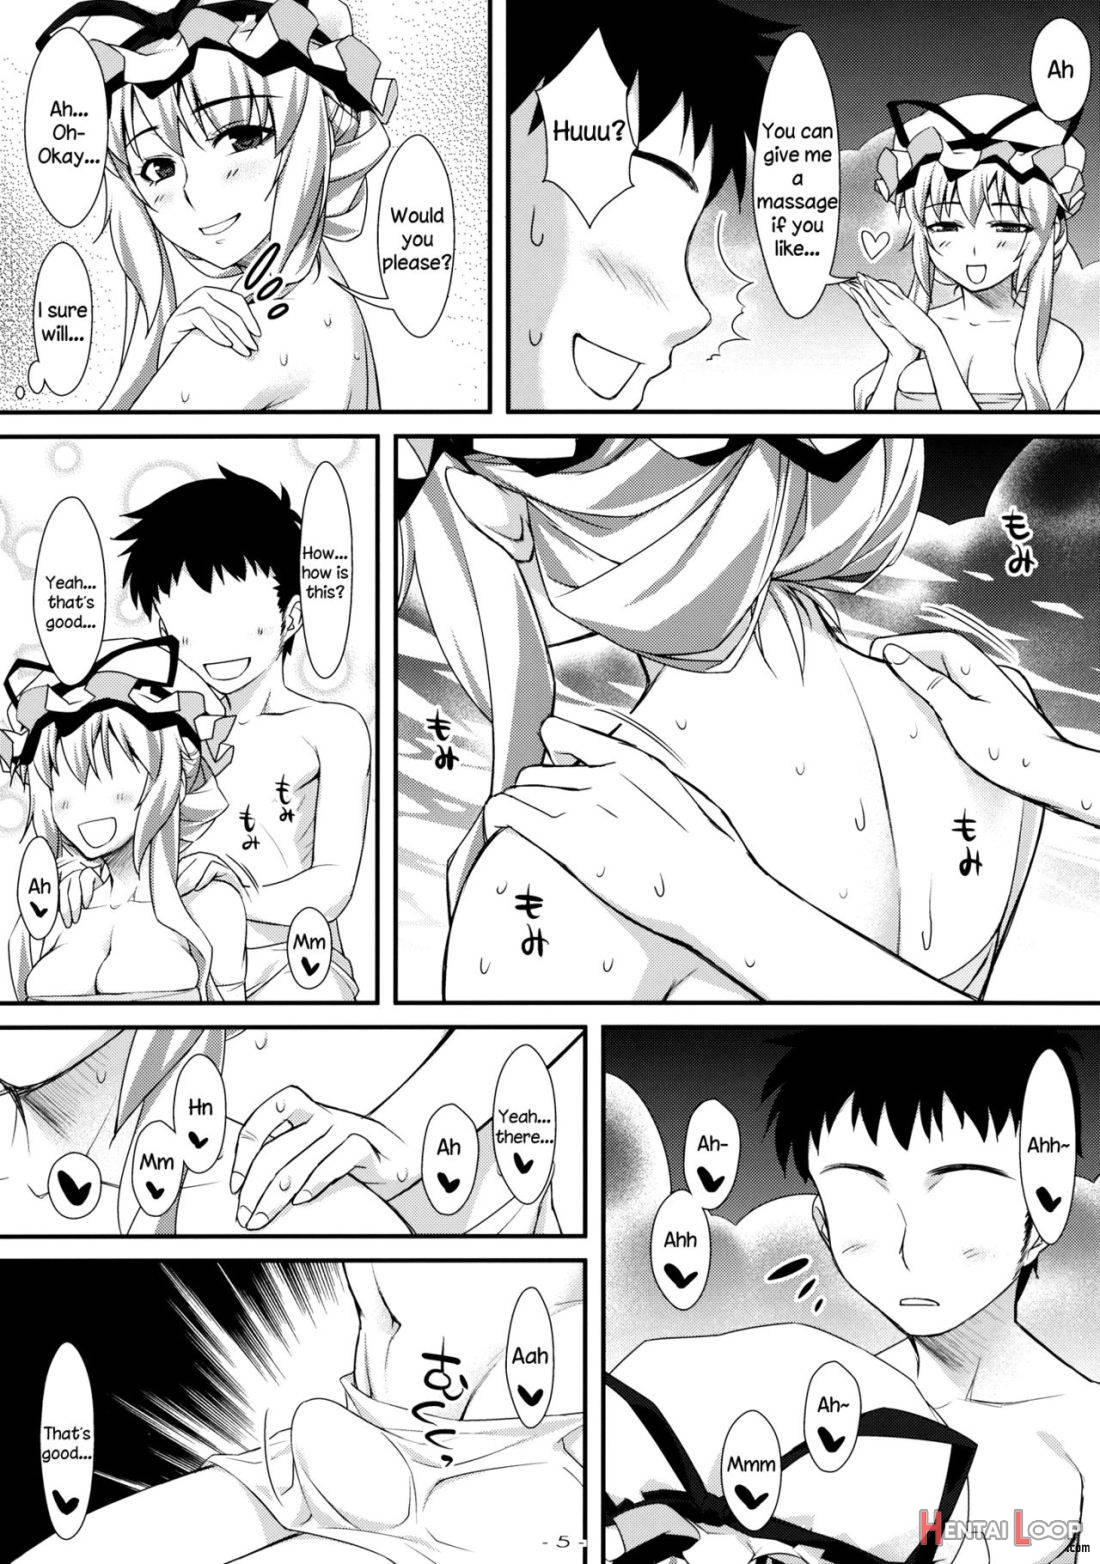 Yasei no Chijo ga Arawareta! 4 page 4